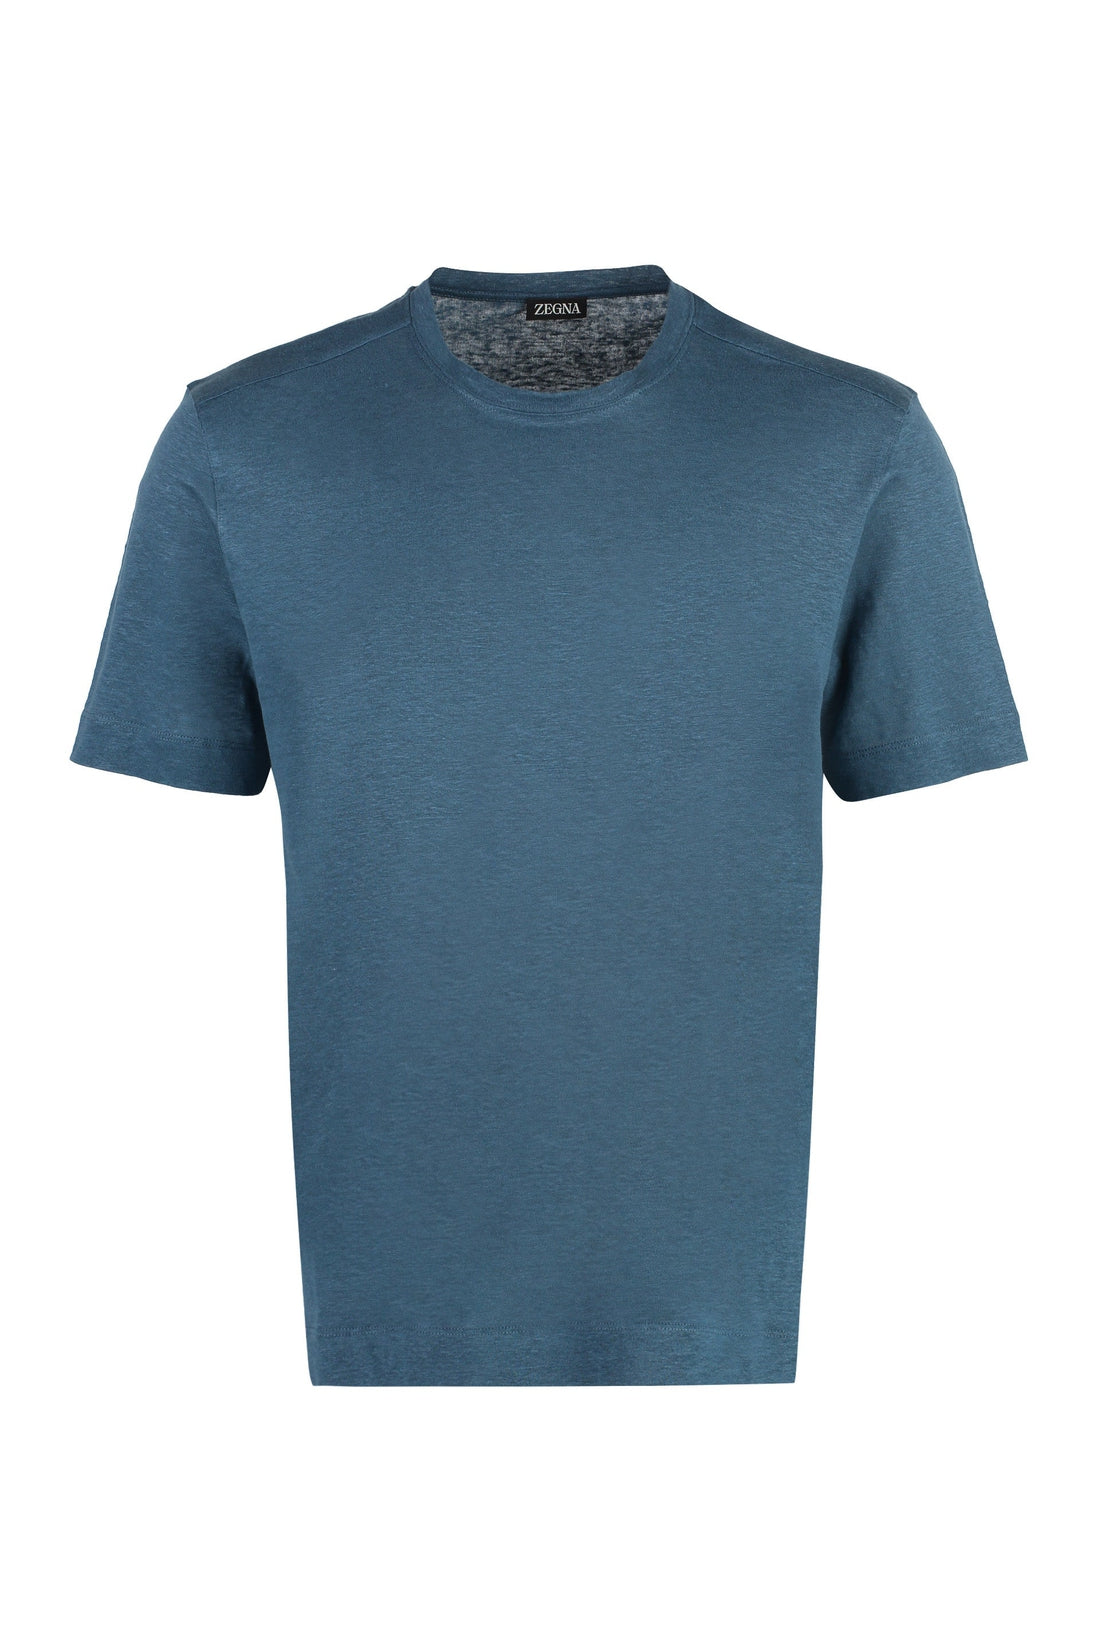 Zegna-OUTLET-SALE-Linen t-shirt-ARCHIVIST